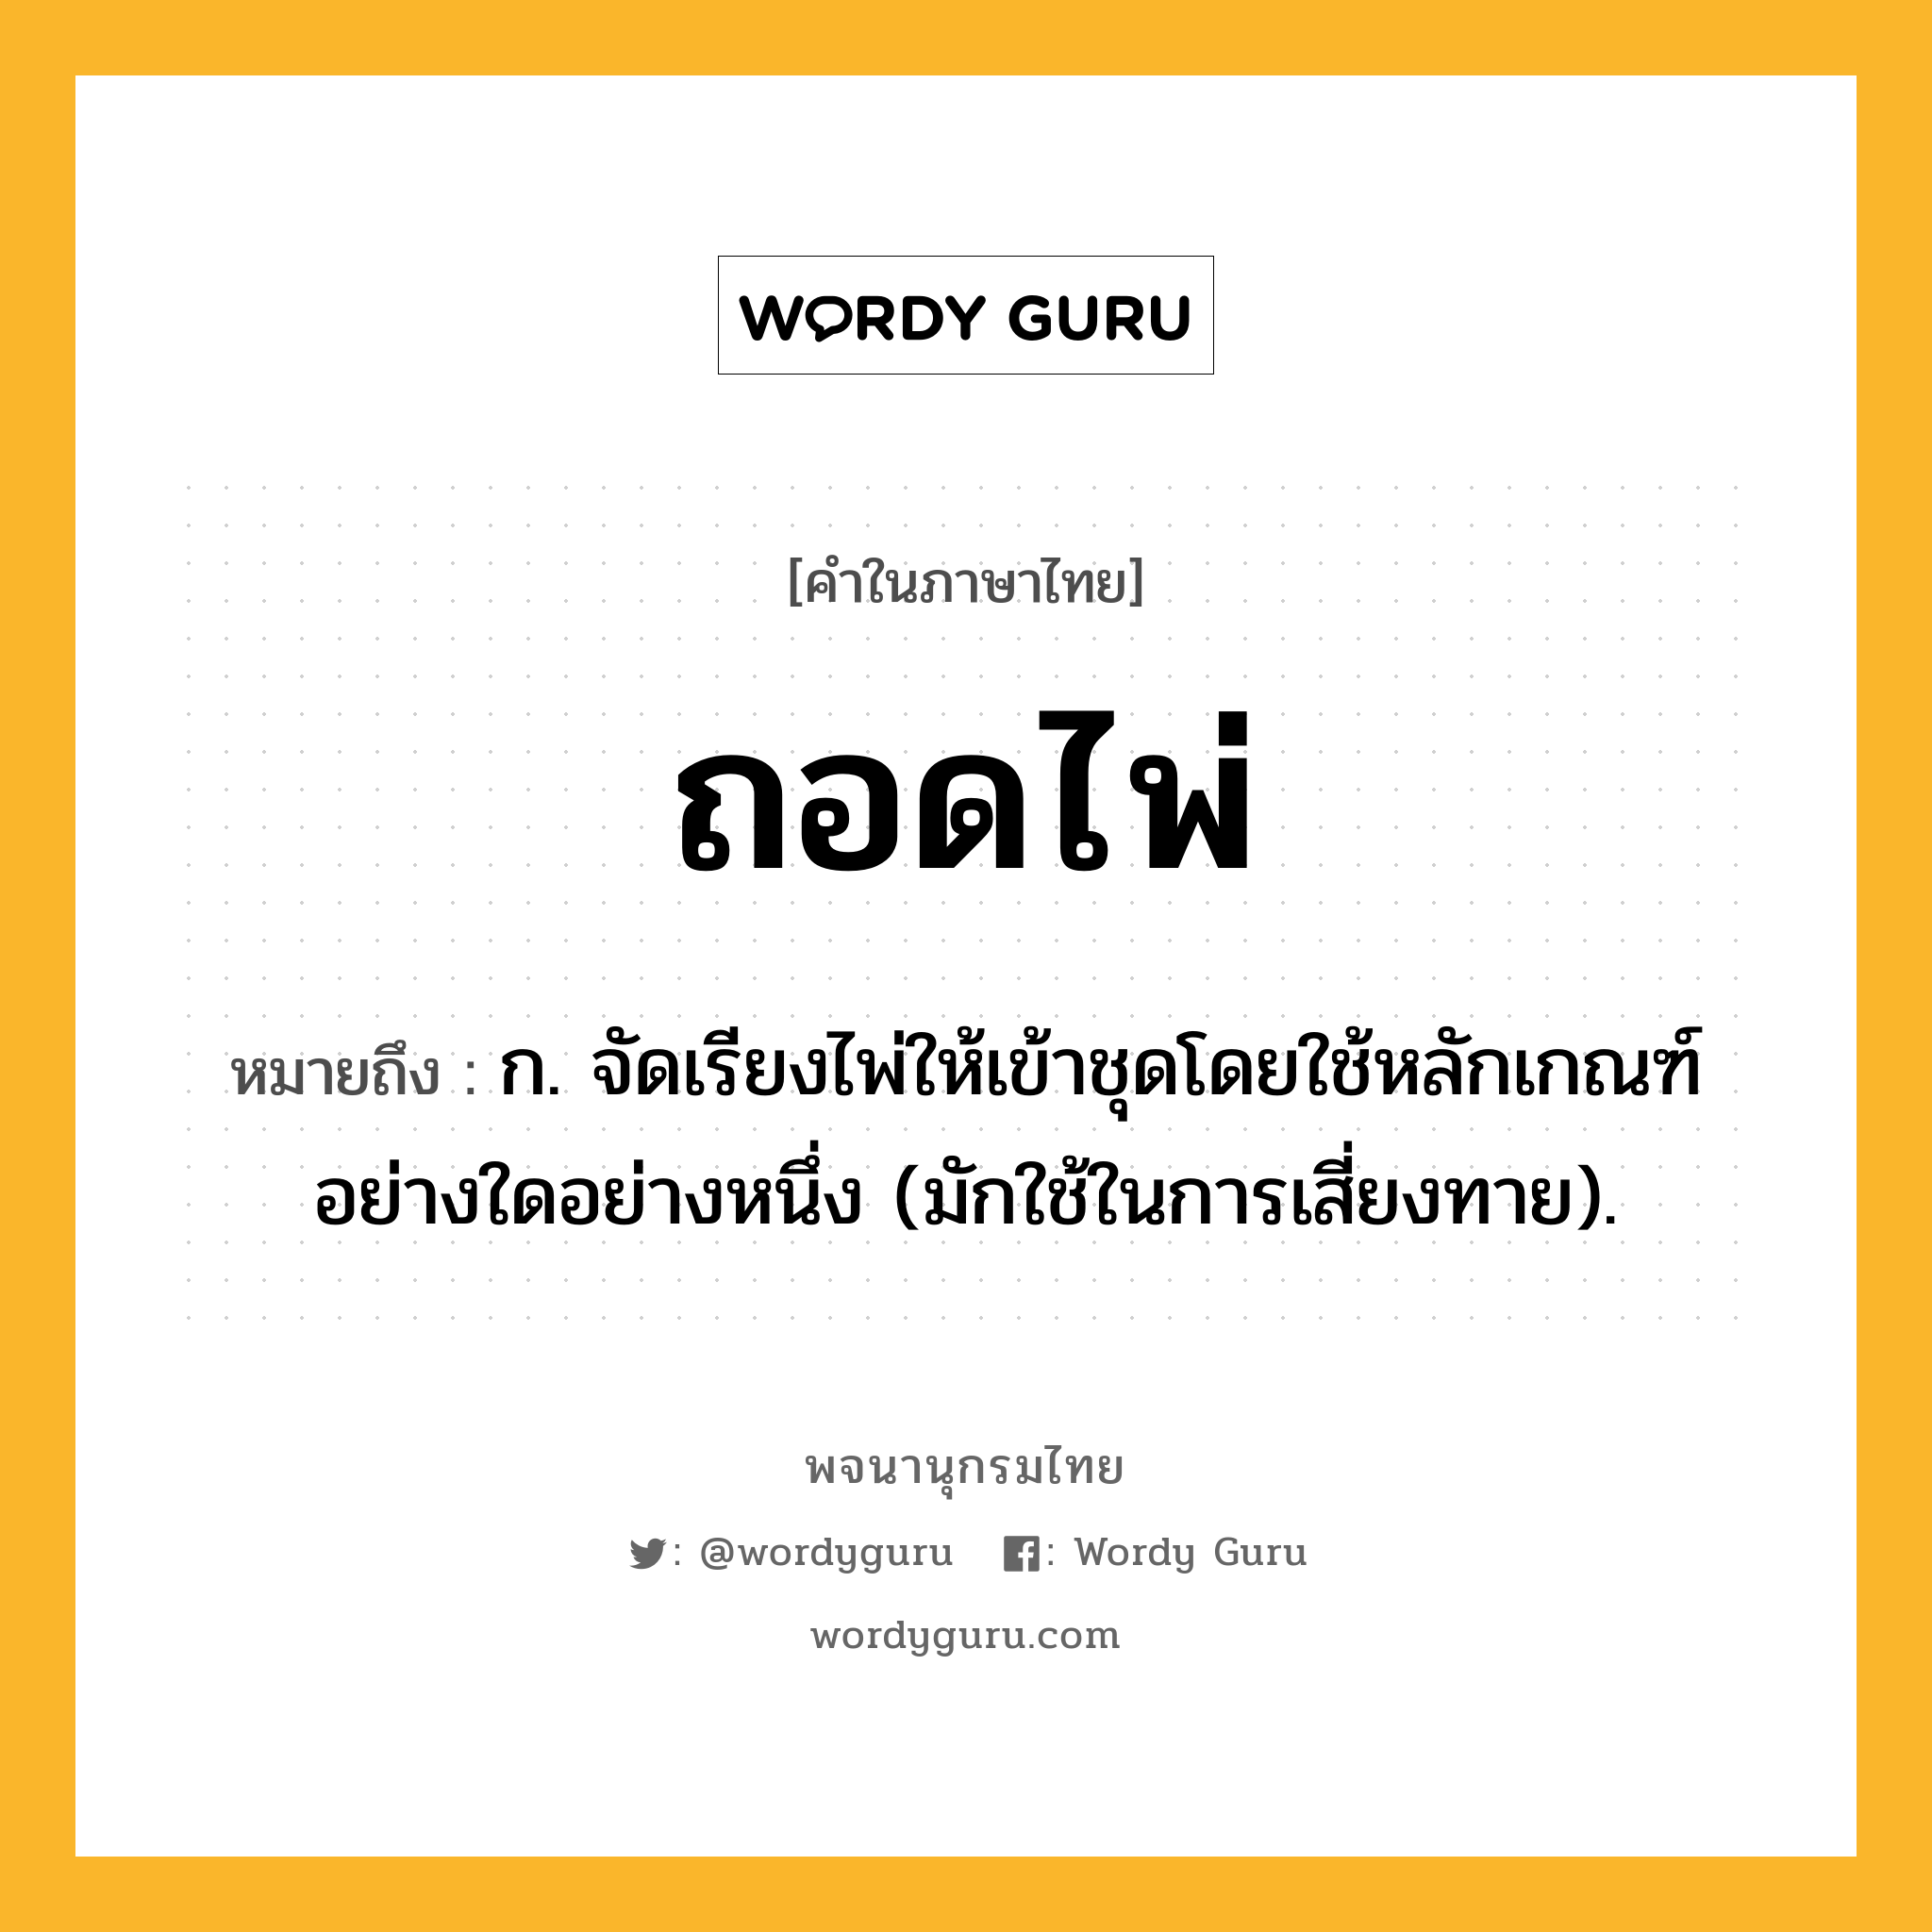 ถอดไพ่ หมายถึงอะไร?, คำในภาษาไทย ถอดไพ่ หมายถึง ก. จัดเรียงไพ่ให้เข้าชุดโดยใช้หลักเกณฑ์อย่างใดอย่างหนึ่ง (มักใช้ในการเสี่ยงทาย).